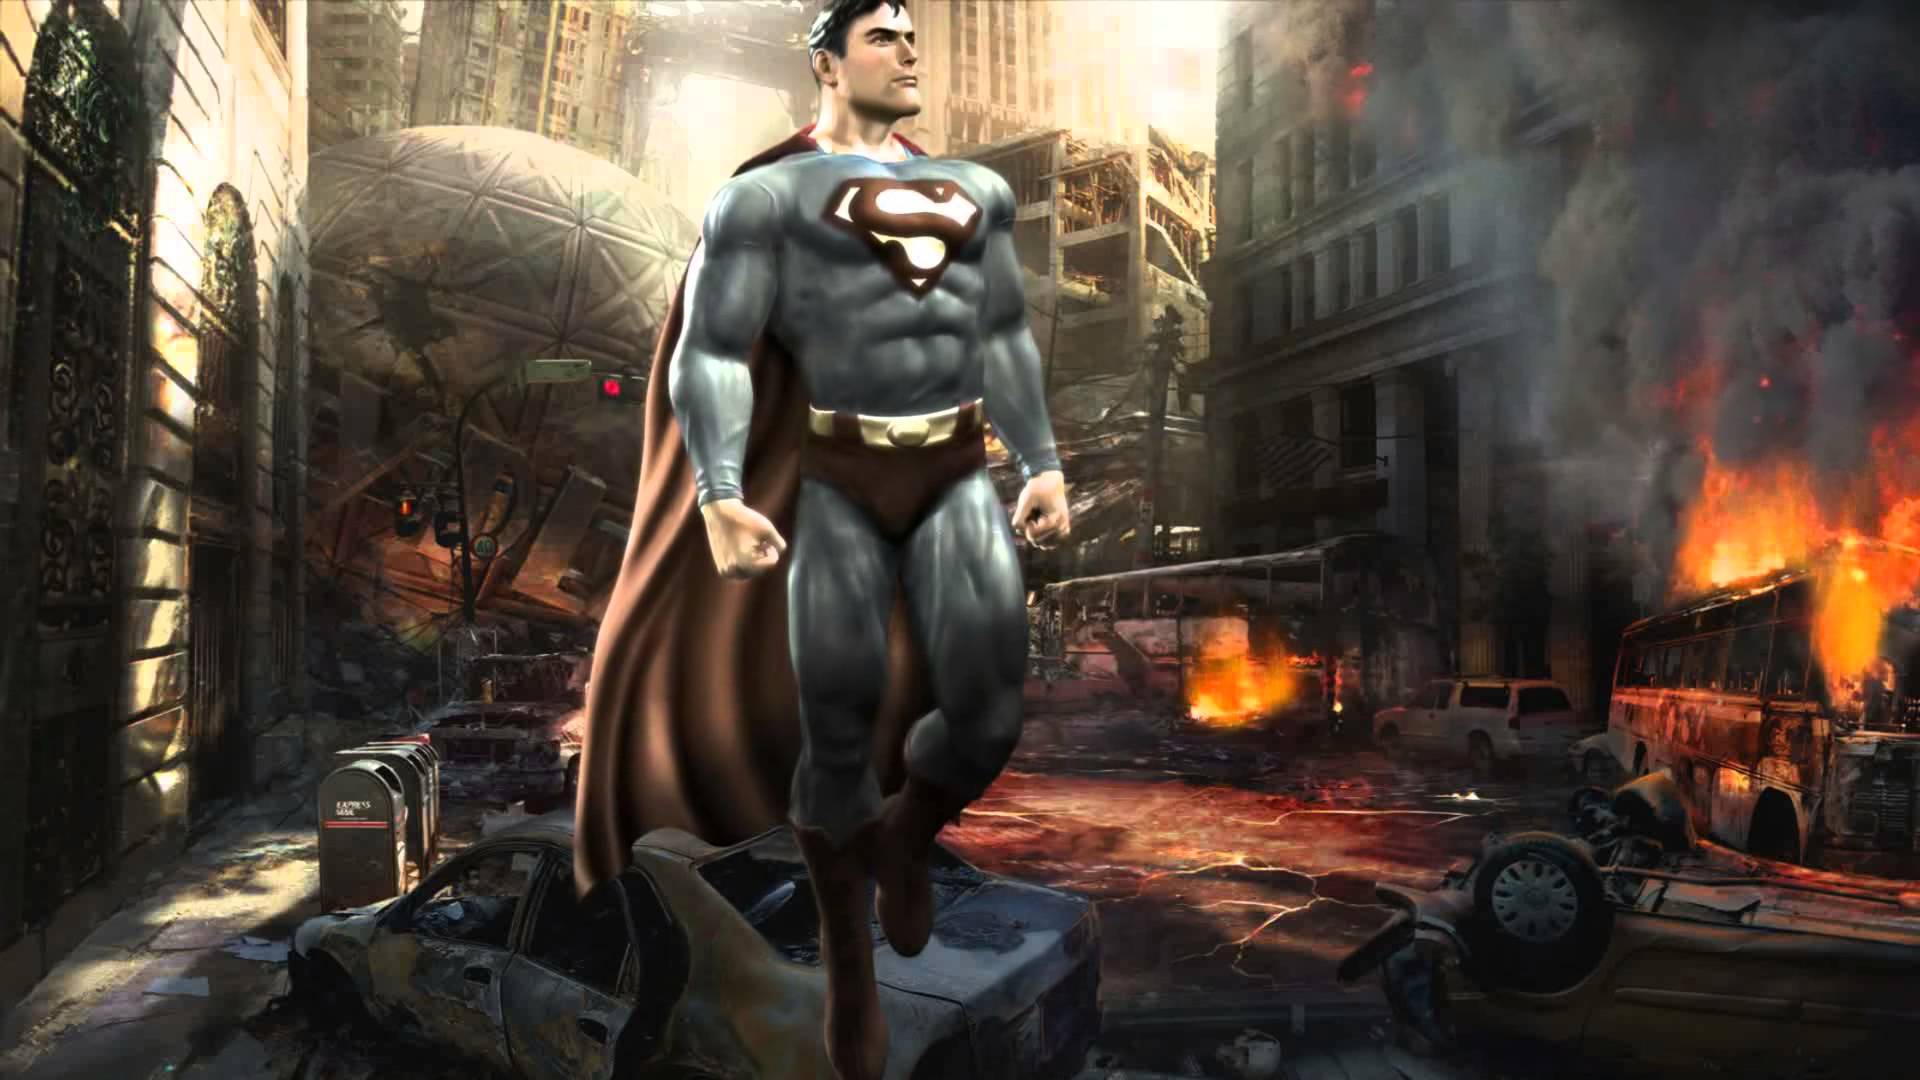 Superman Animated Wallpaper http / / www.desktopanimated.com / - YouTube